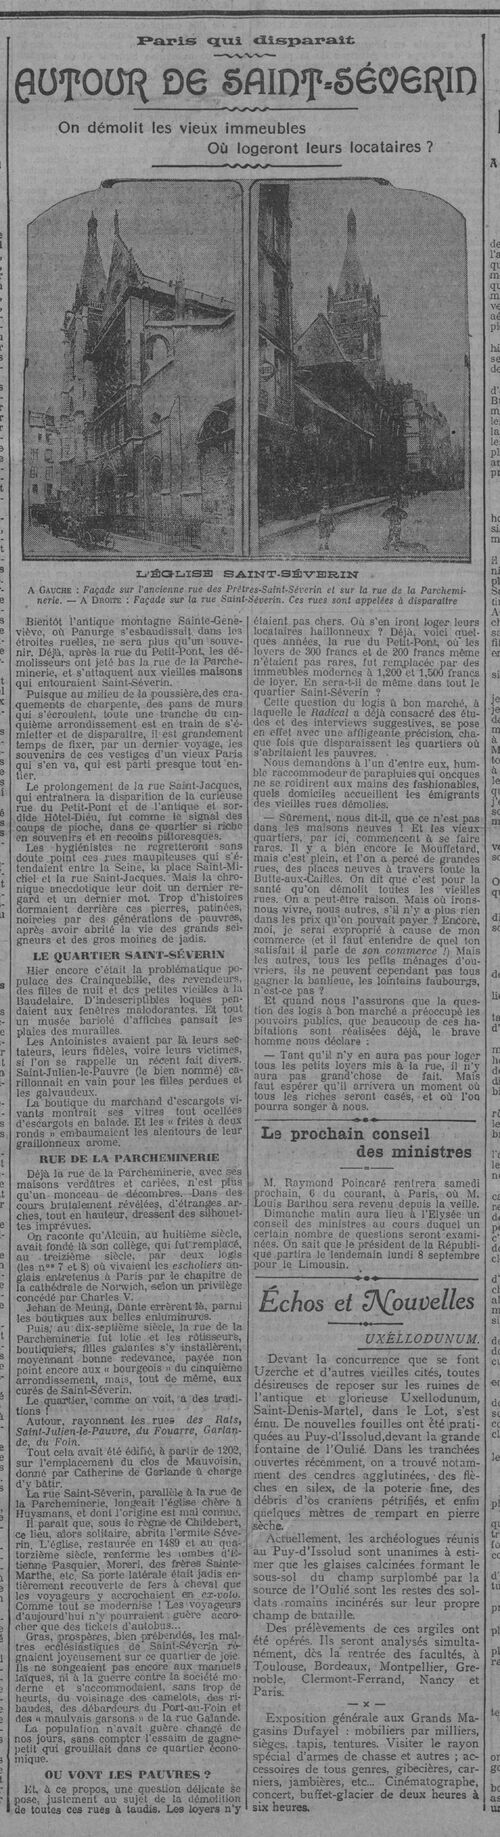 La rue de la Parcheminerie (Le Radical, 3 sept 1913)